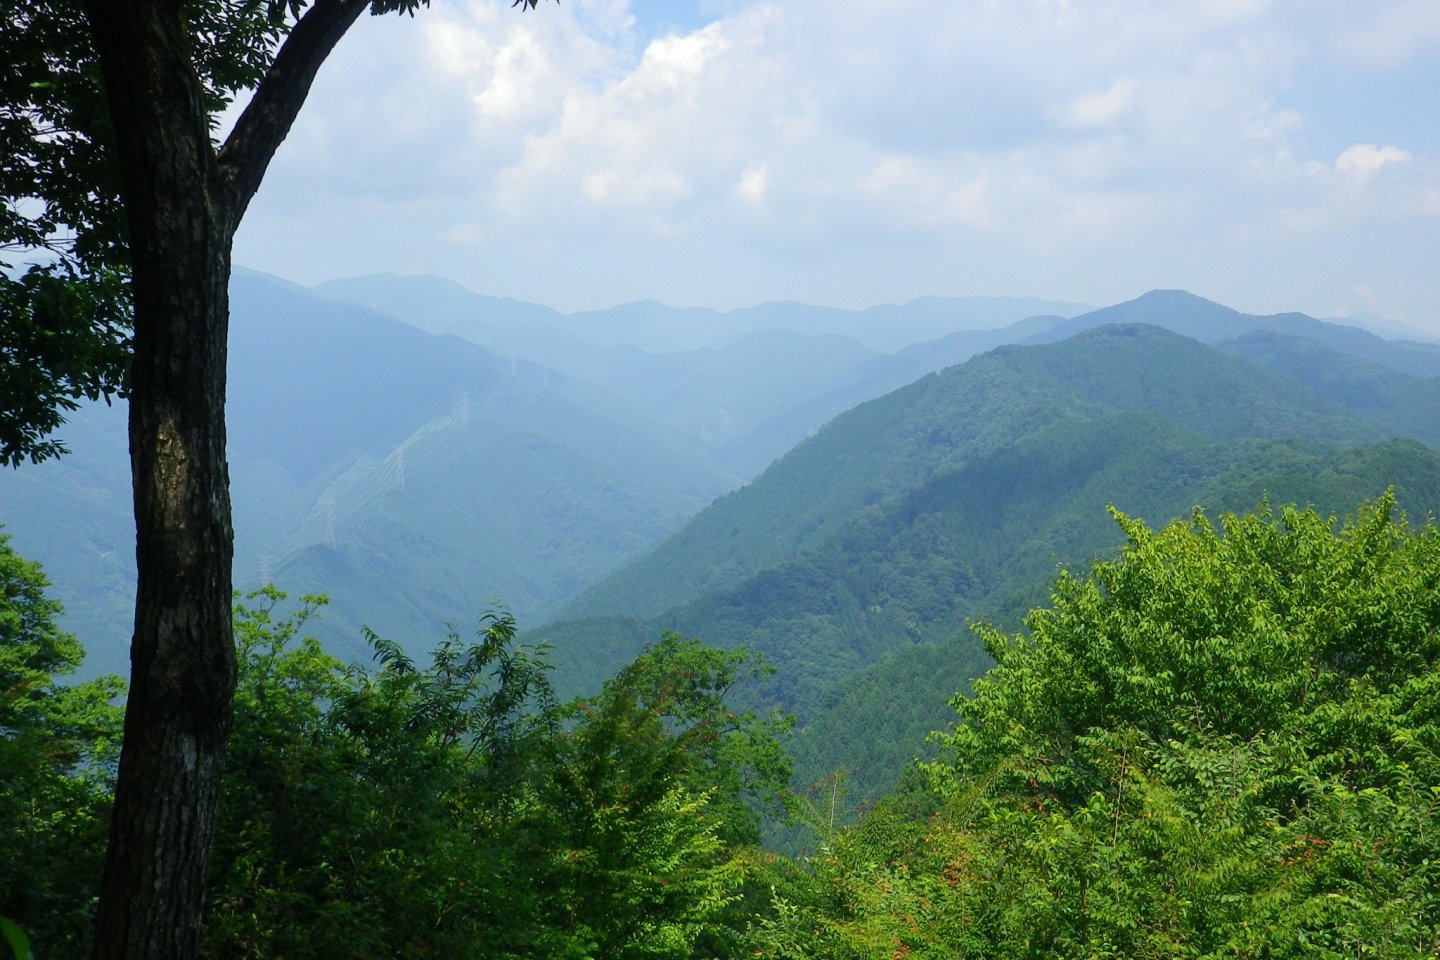 岩茸石山山頂からの眺め。奥武蔵・秩父の山々が見渡せる。